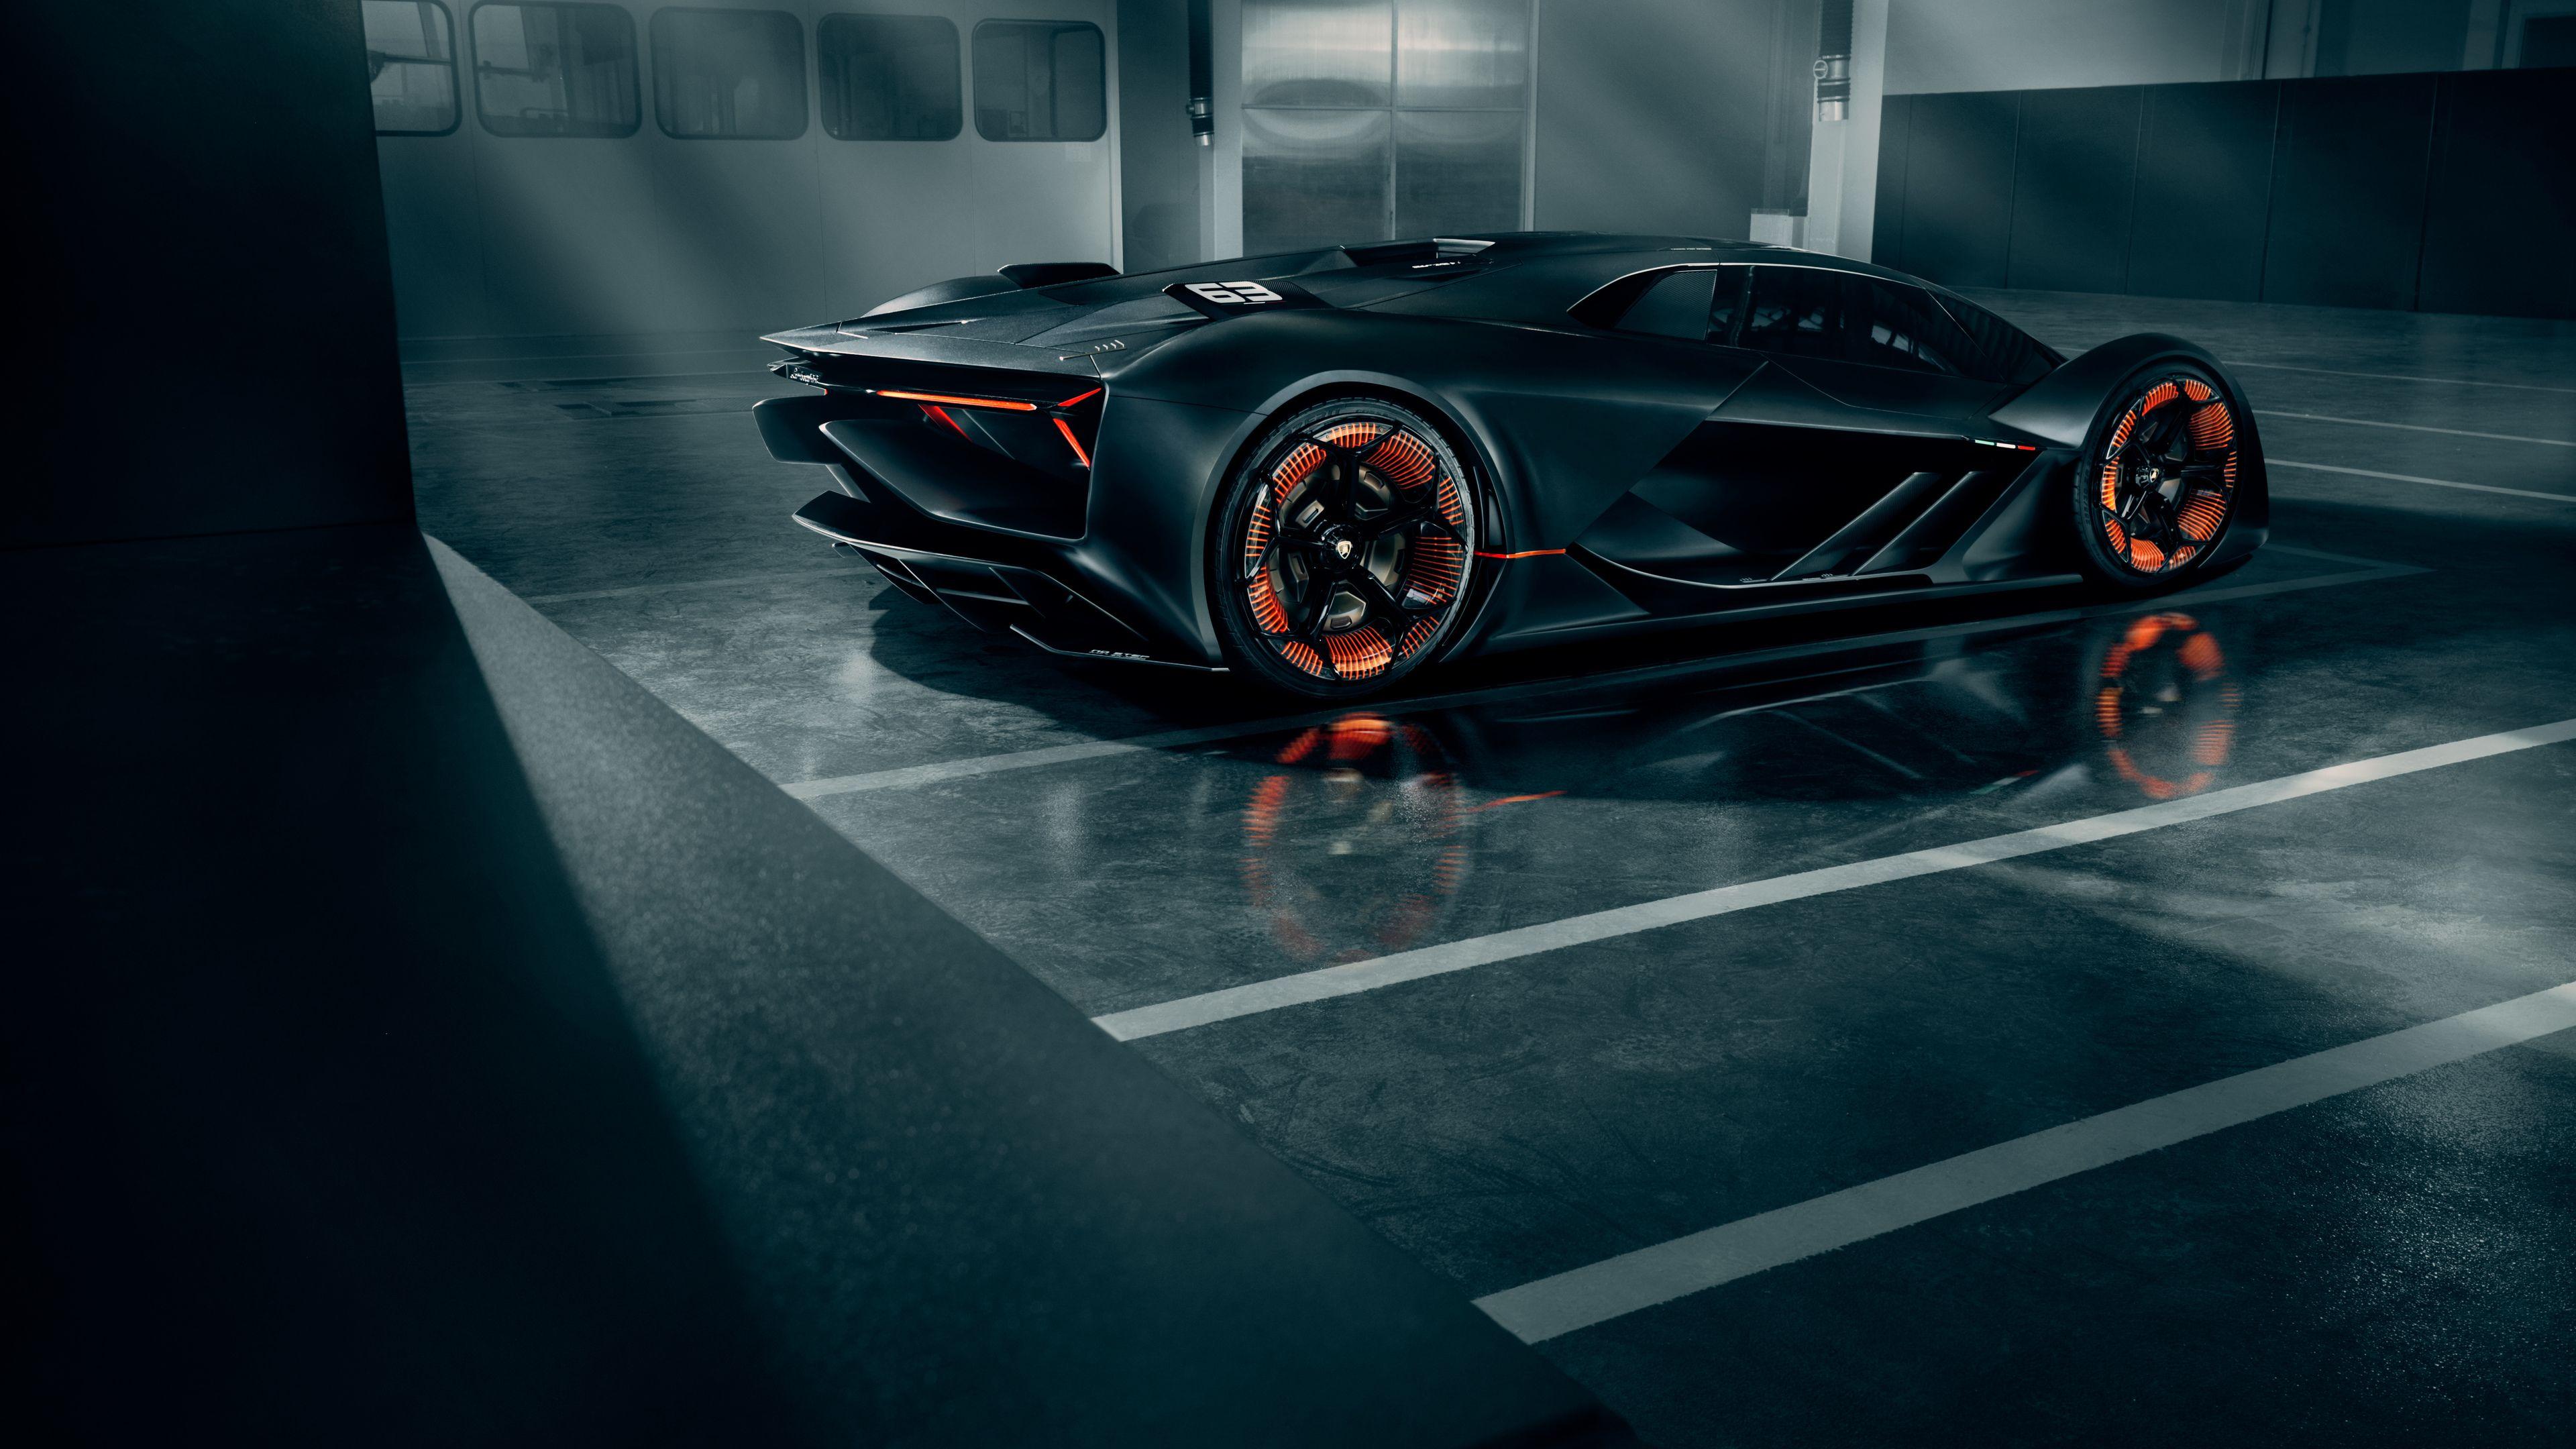 Wallpaper 4k Lamborghini Terzo Millennio 2019 Rear View 2019 cars